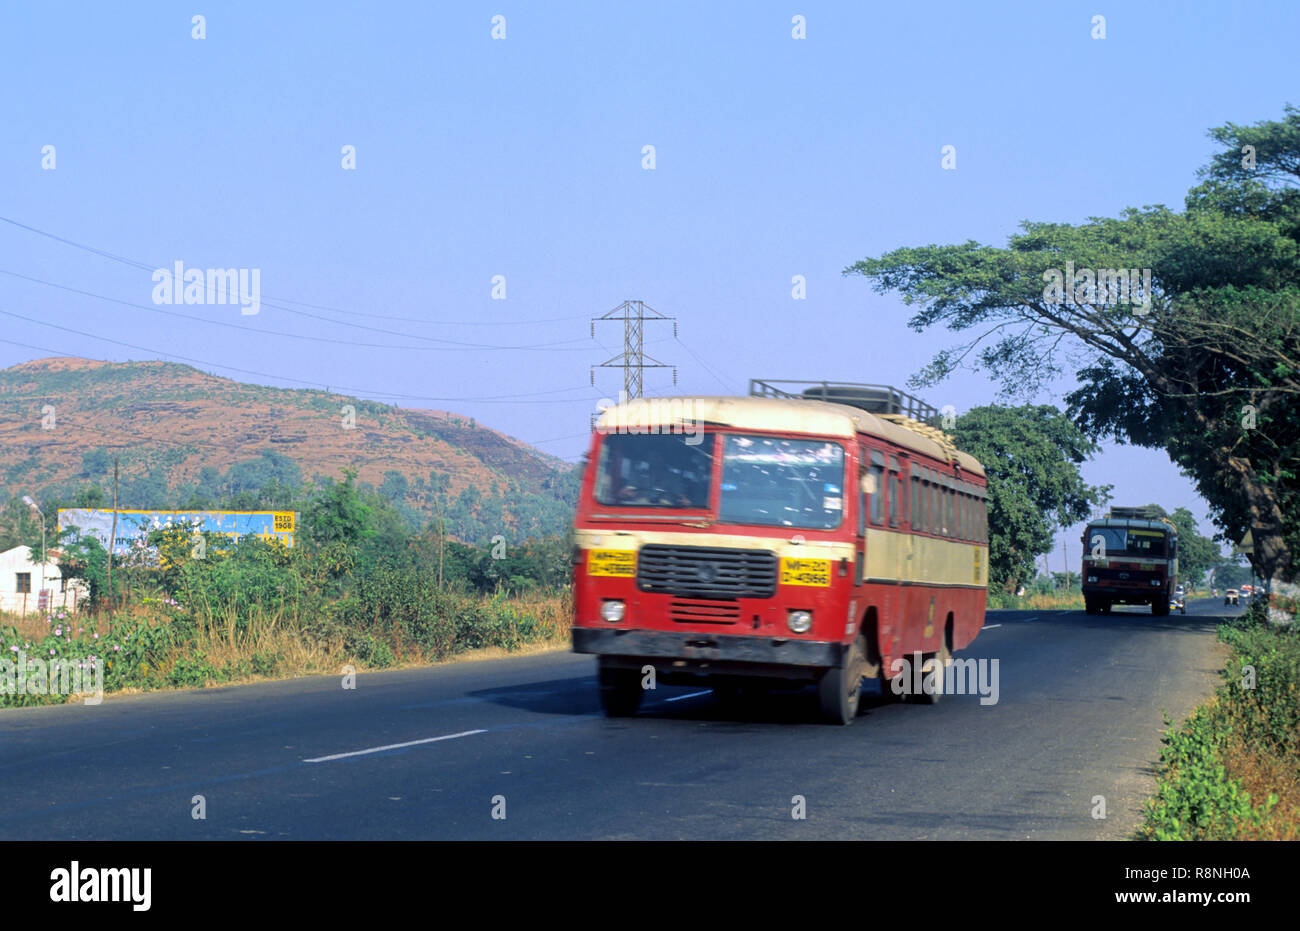 State Transport Bus on national highway NO.4, lonavala, maharashtra, india Stock Photo